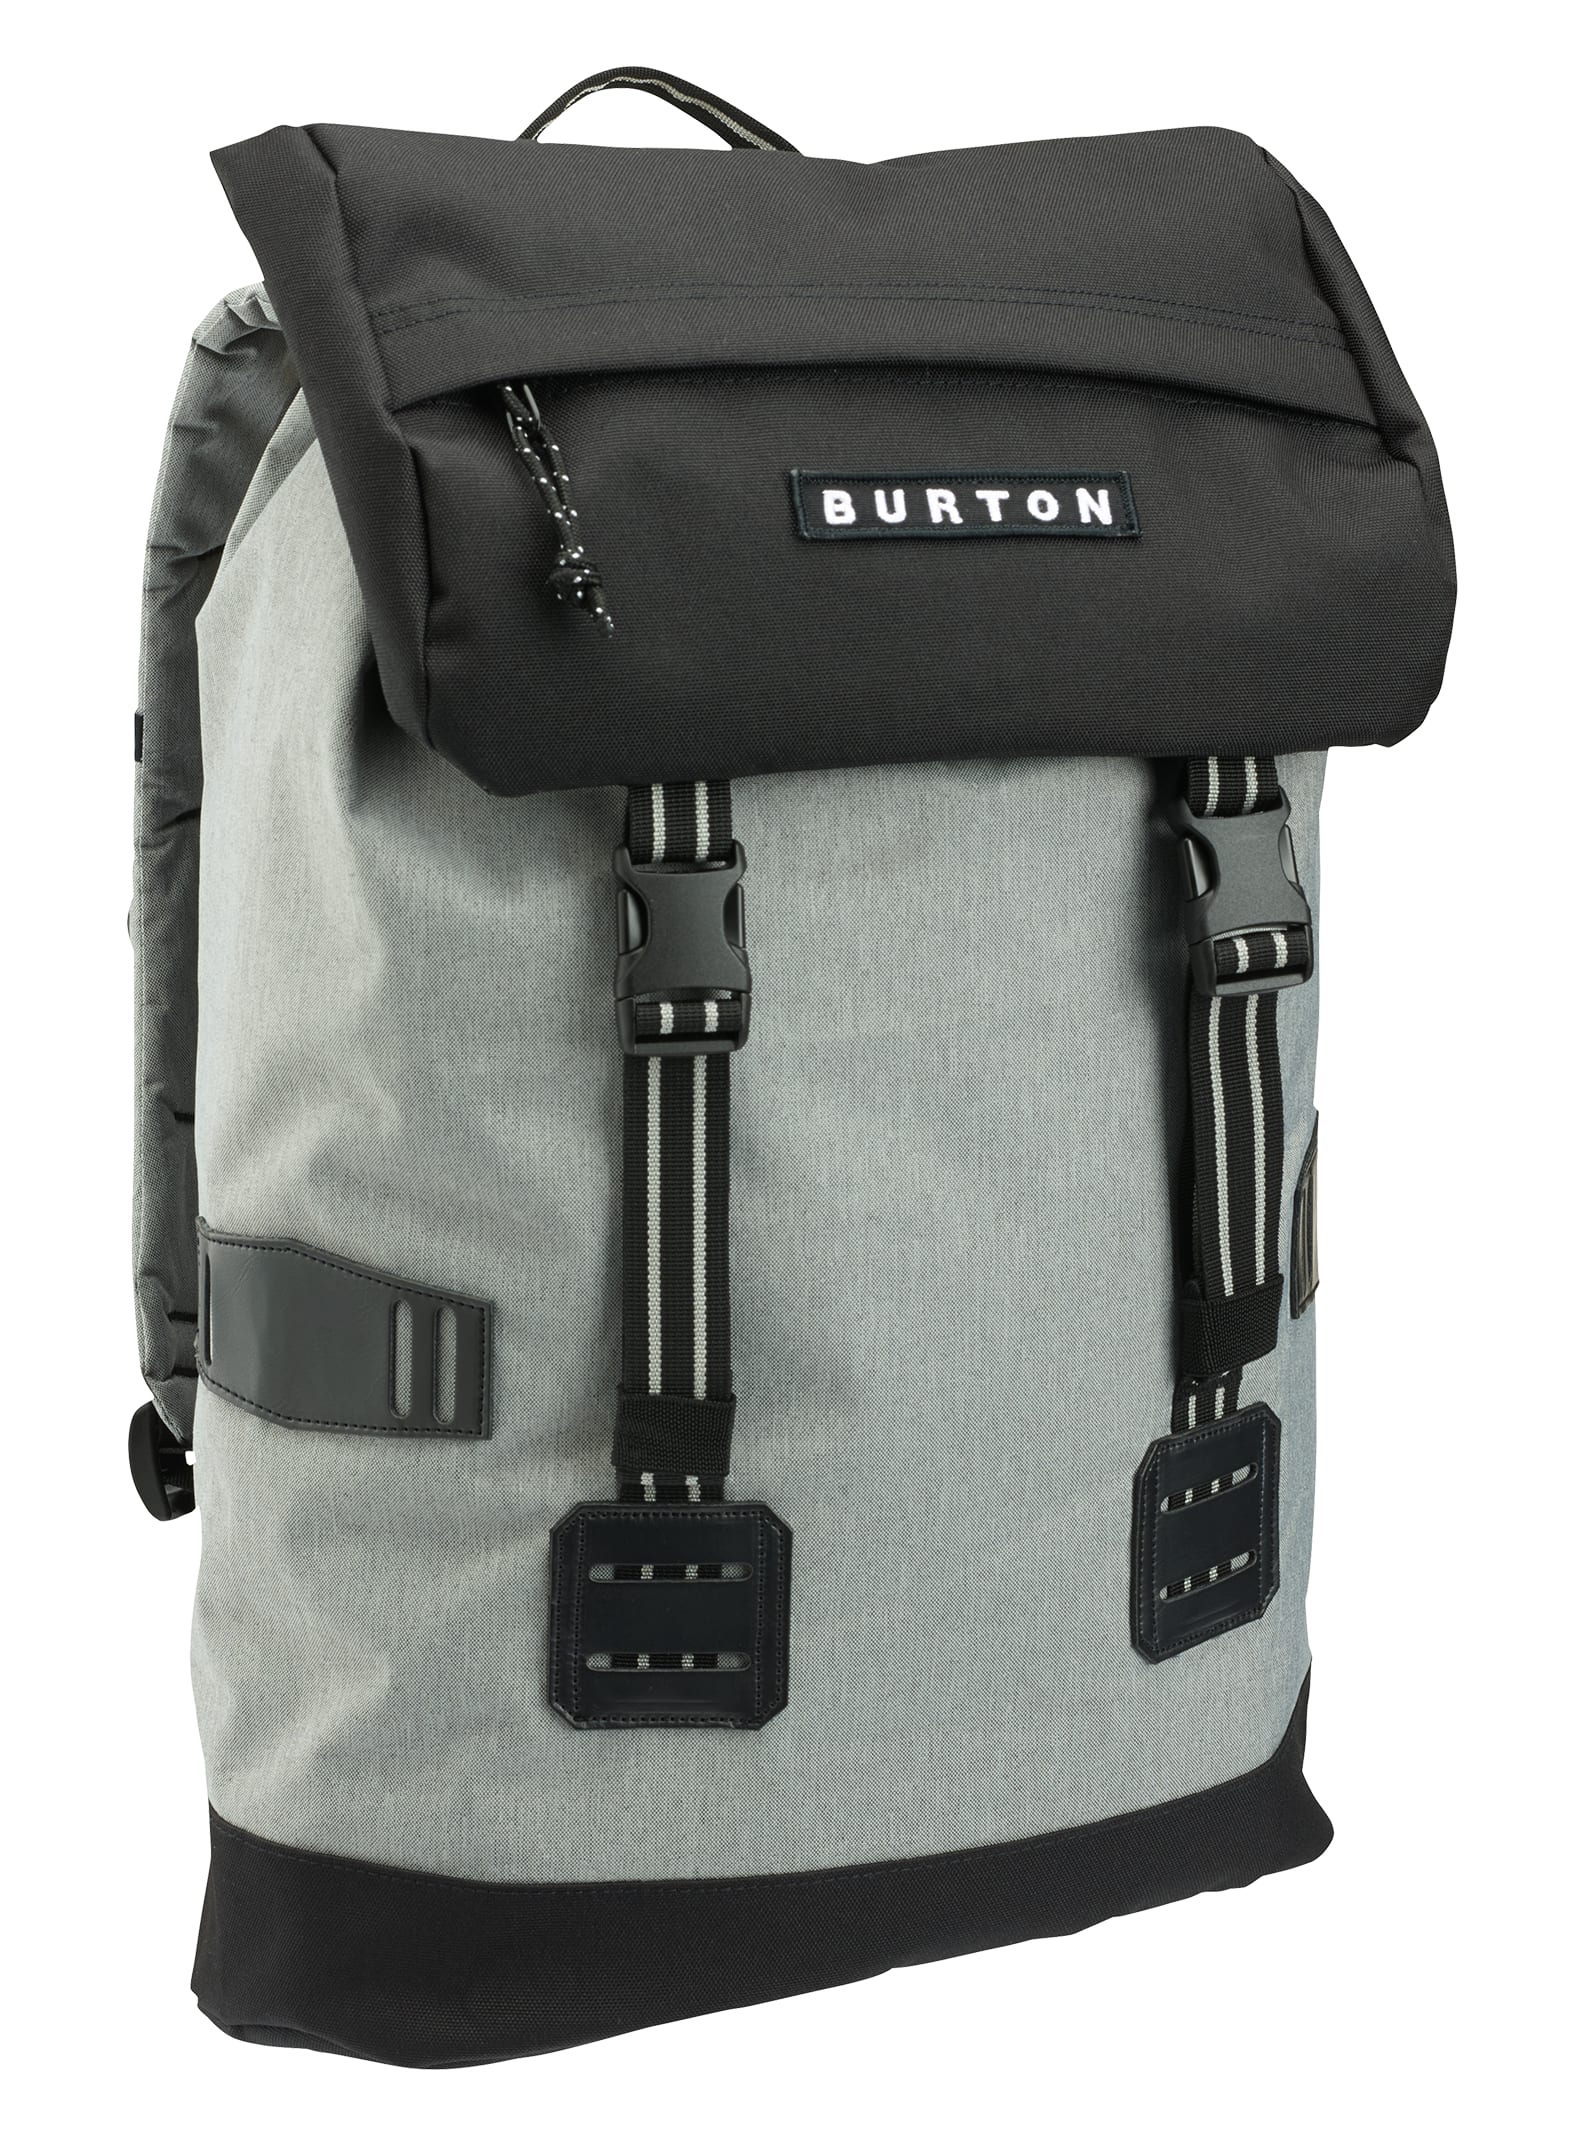 Burton Tinder Rucksack Schule Freizeit Laptop Tasche Backpack Bag 16337107500 